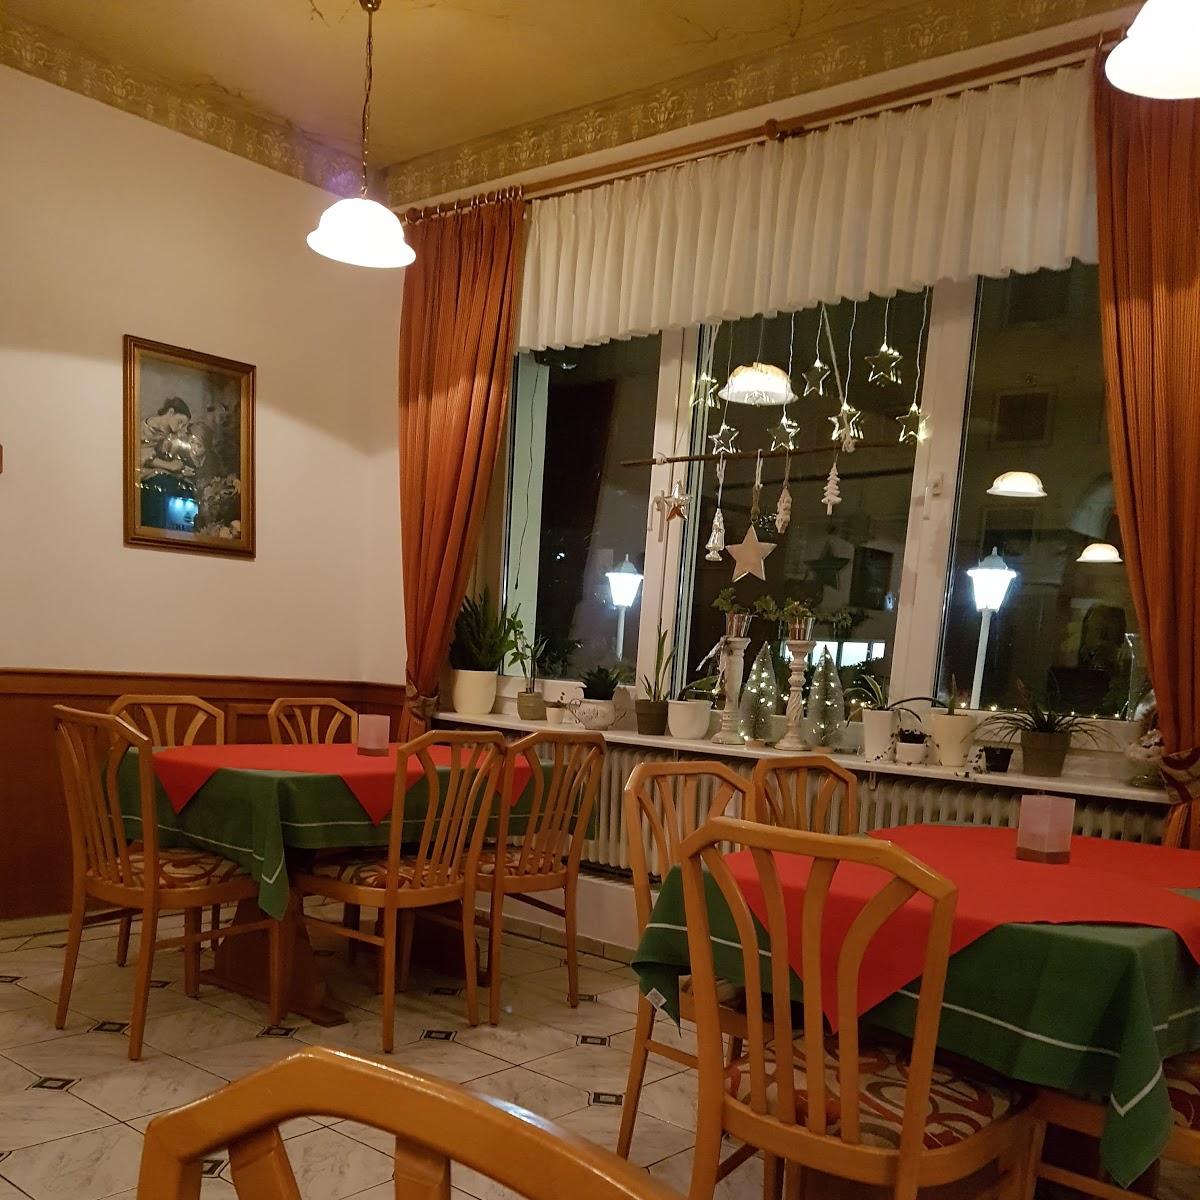 Restaurant "Ristorante Pizzeria Bella Napoli" in  Meinberg